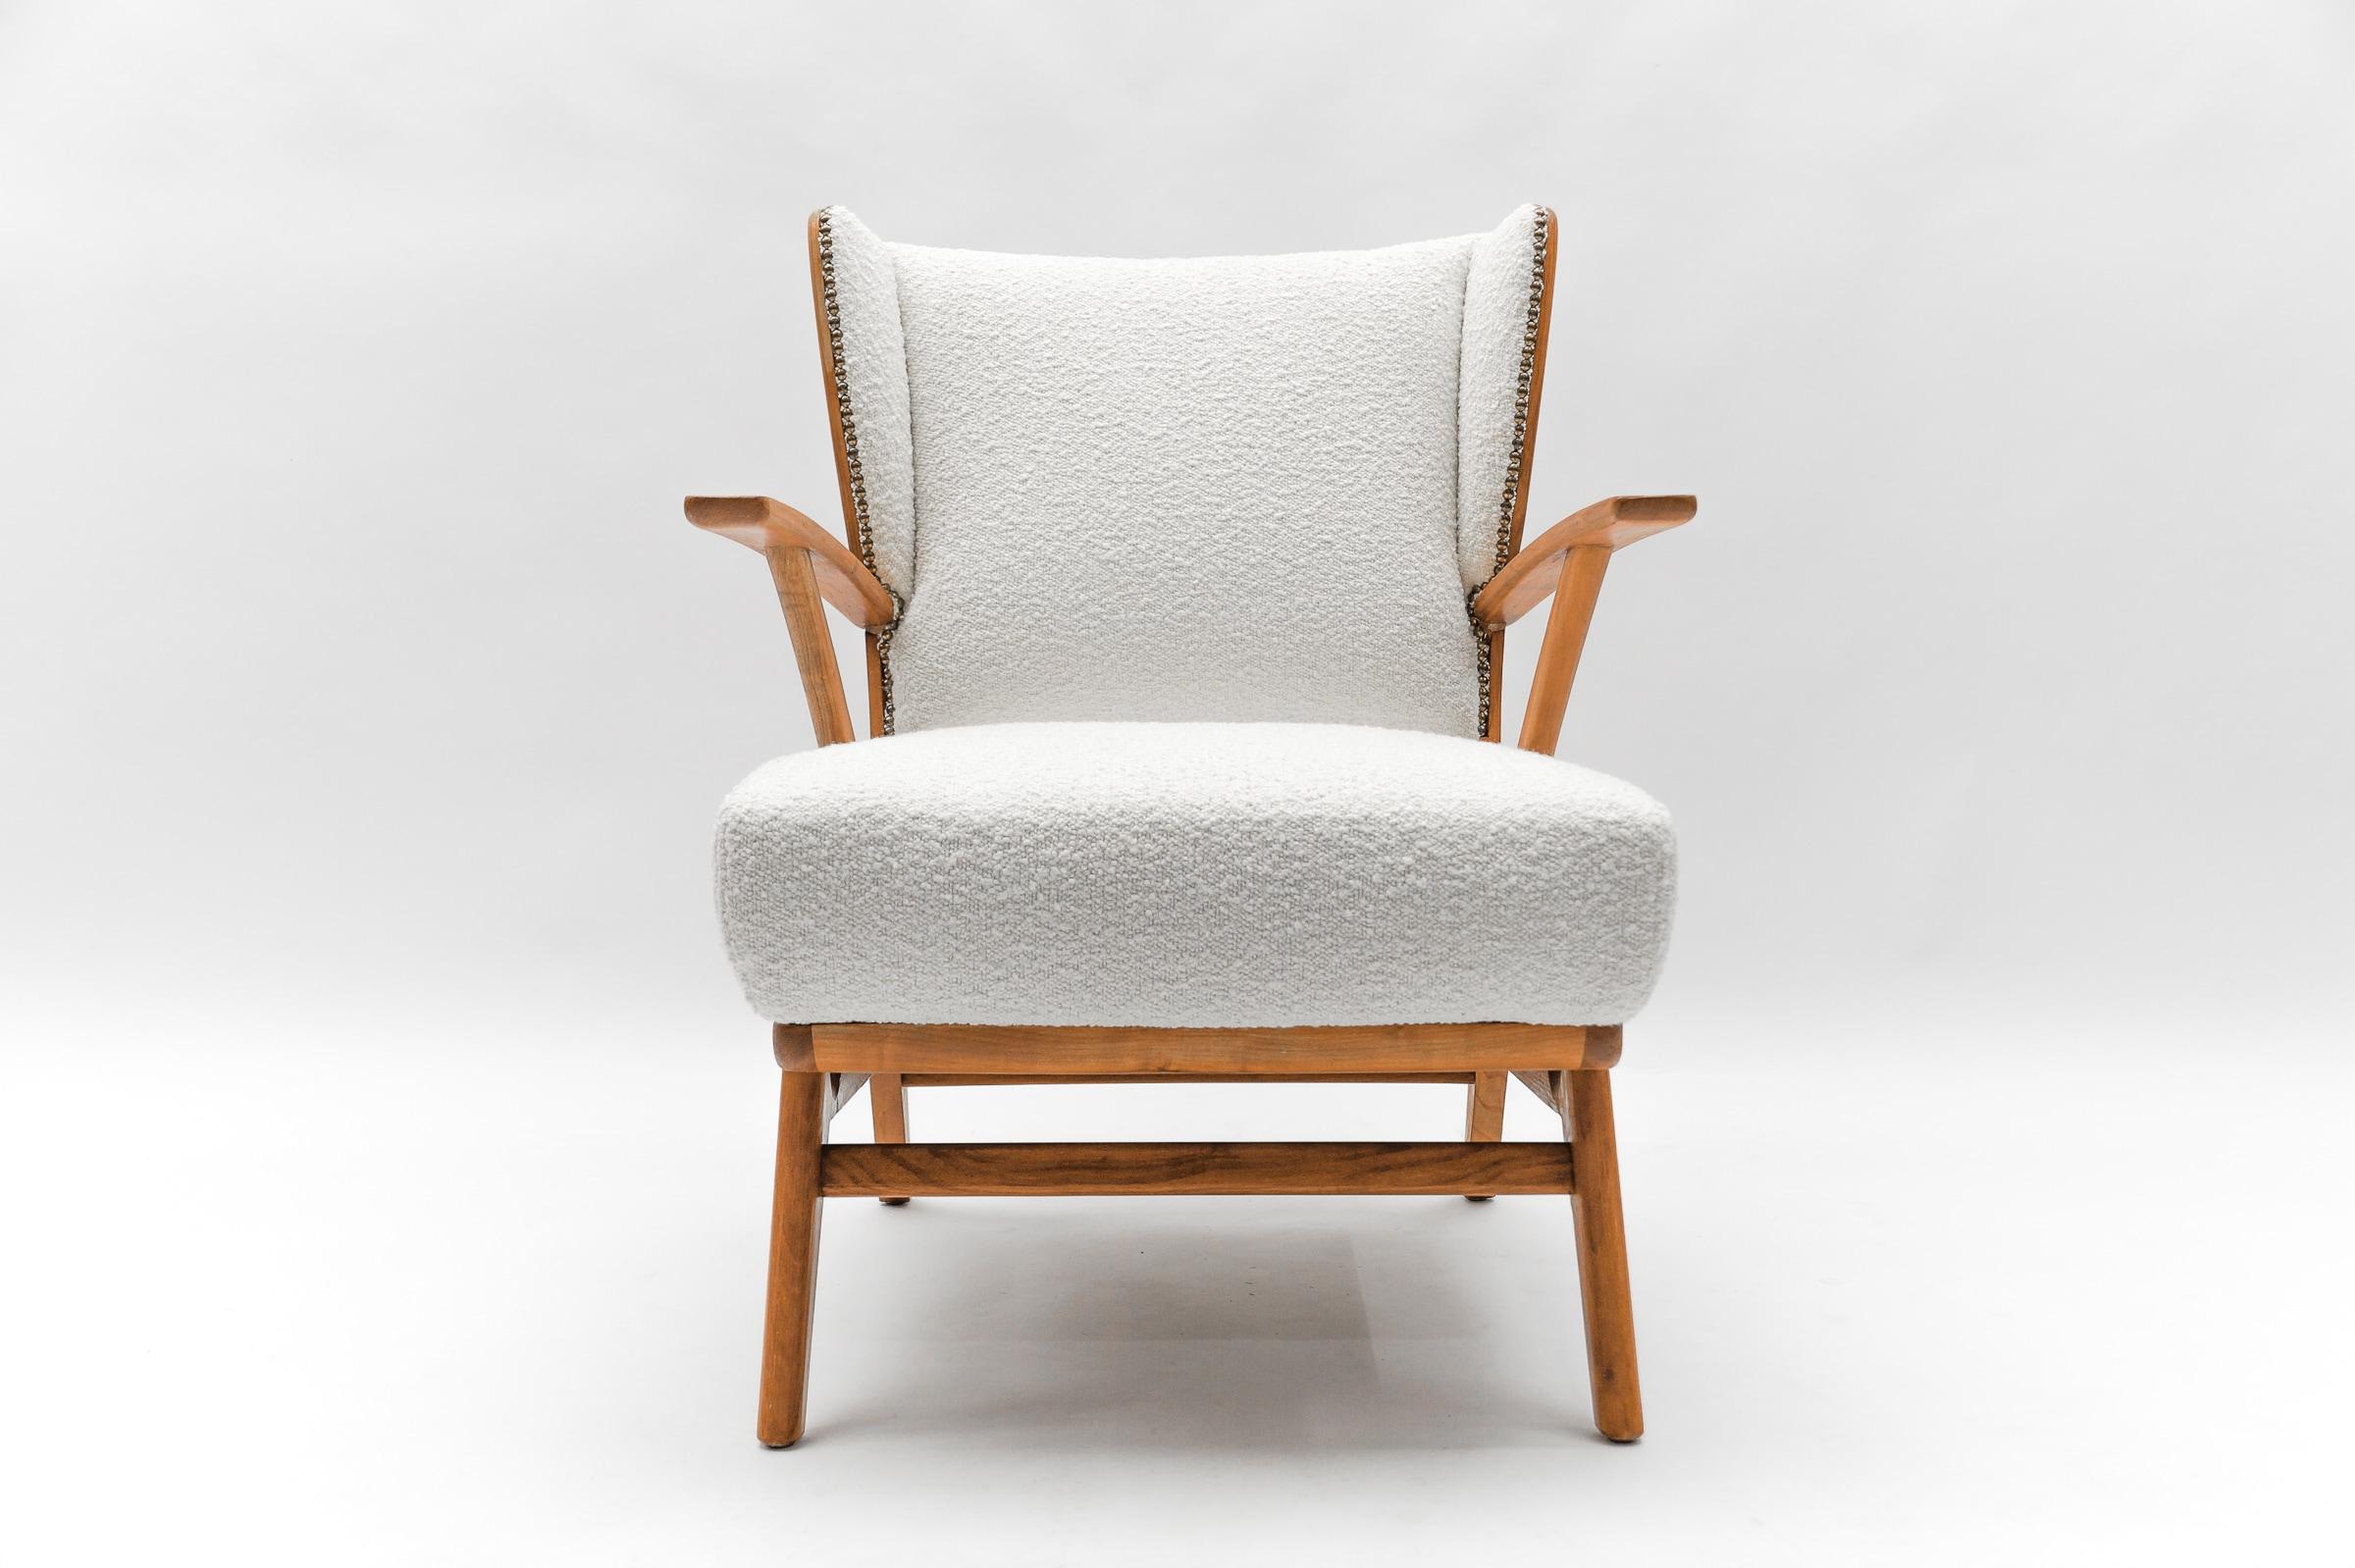 Des fauteuils superbes.

Nouvelle sellerie en Boucle blanche.

Nous disposons d'une deuxième chaise identique sur l'estrade.
